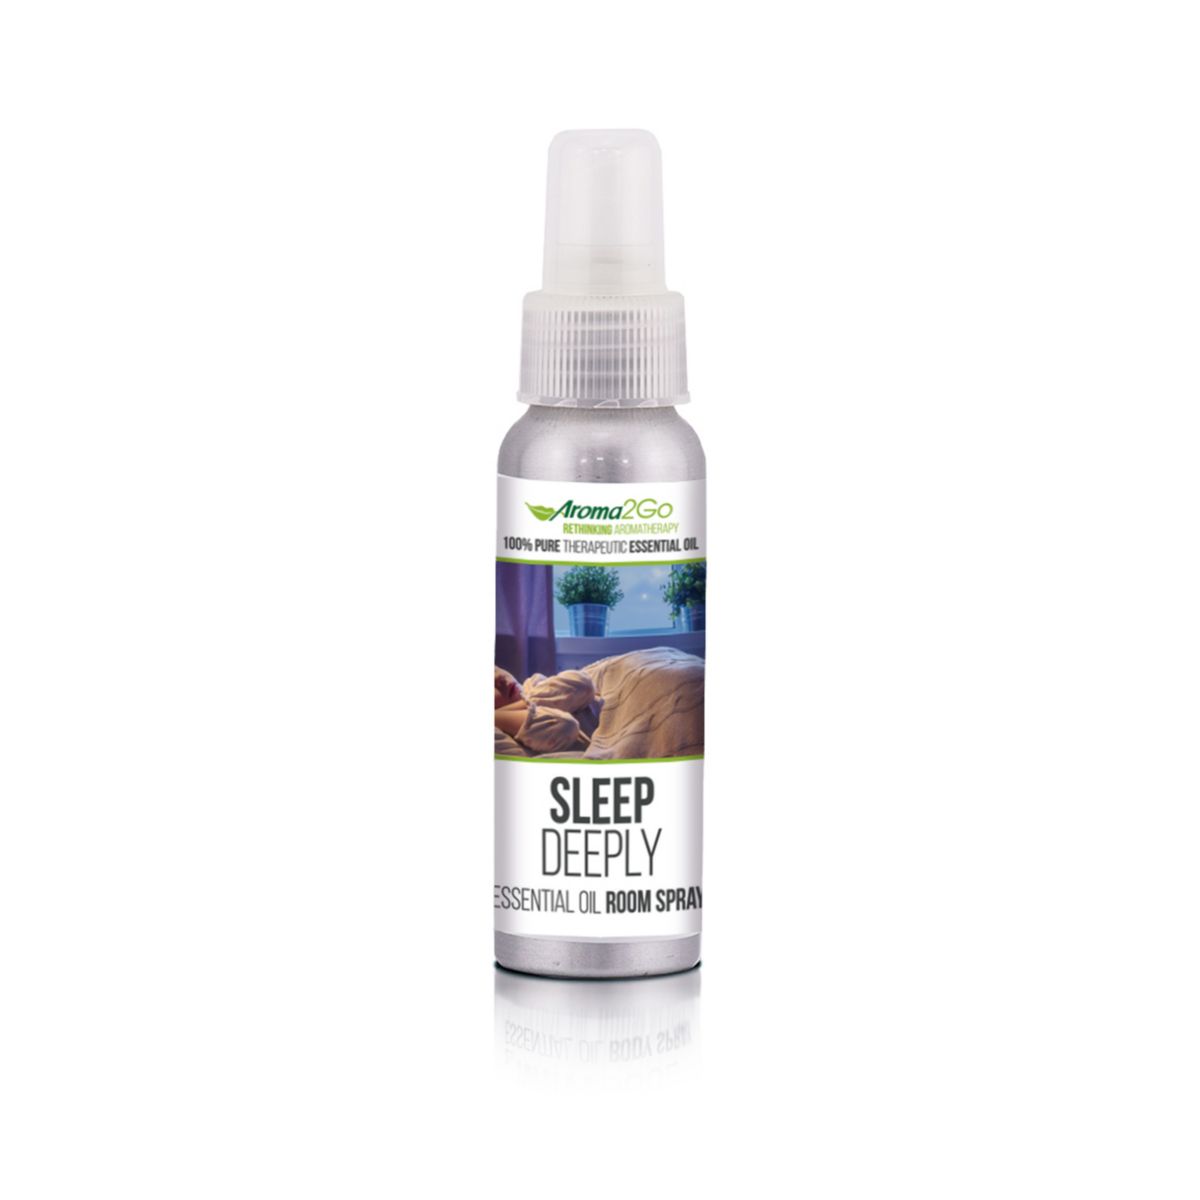 Aroma2Go Sleep Deeply - Чистое эфирное масло на растительной основе 4 унции. Спрей для помещений Aroma2Go